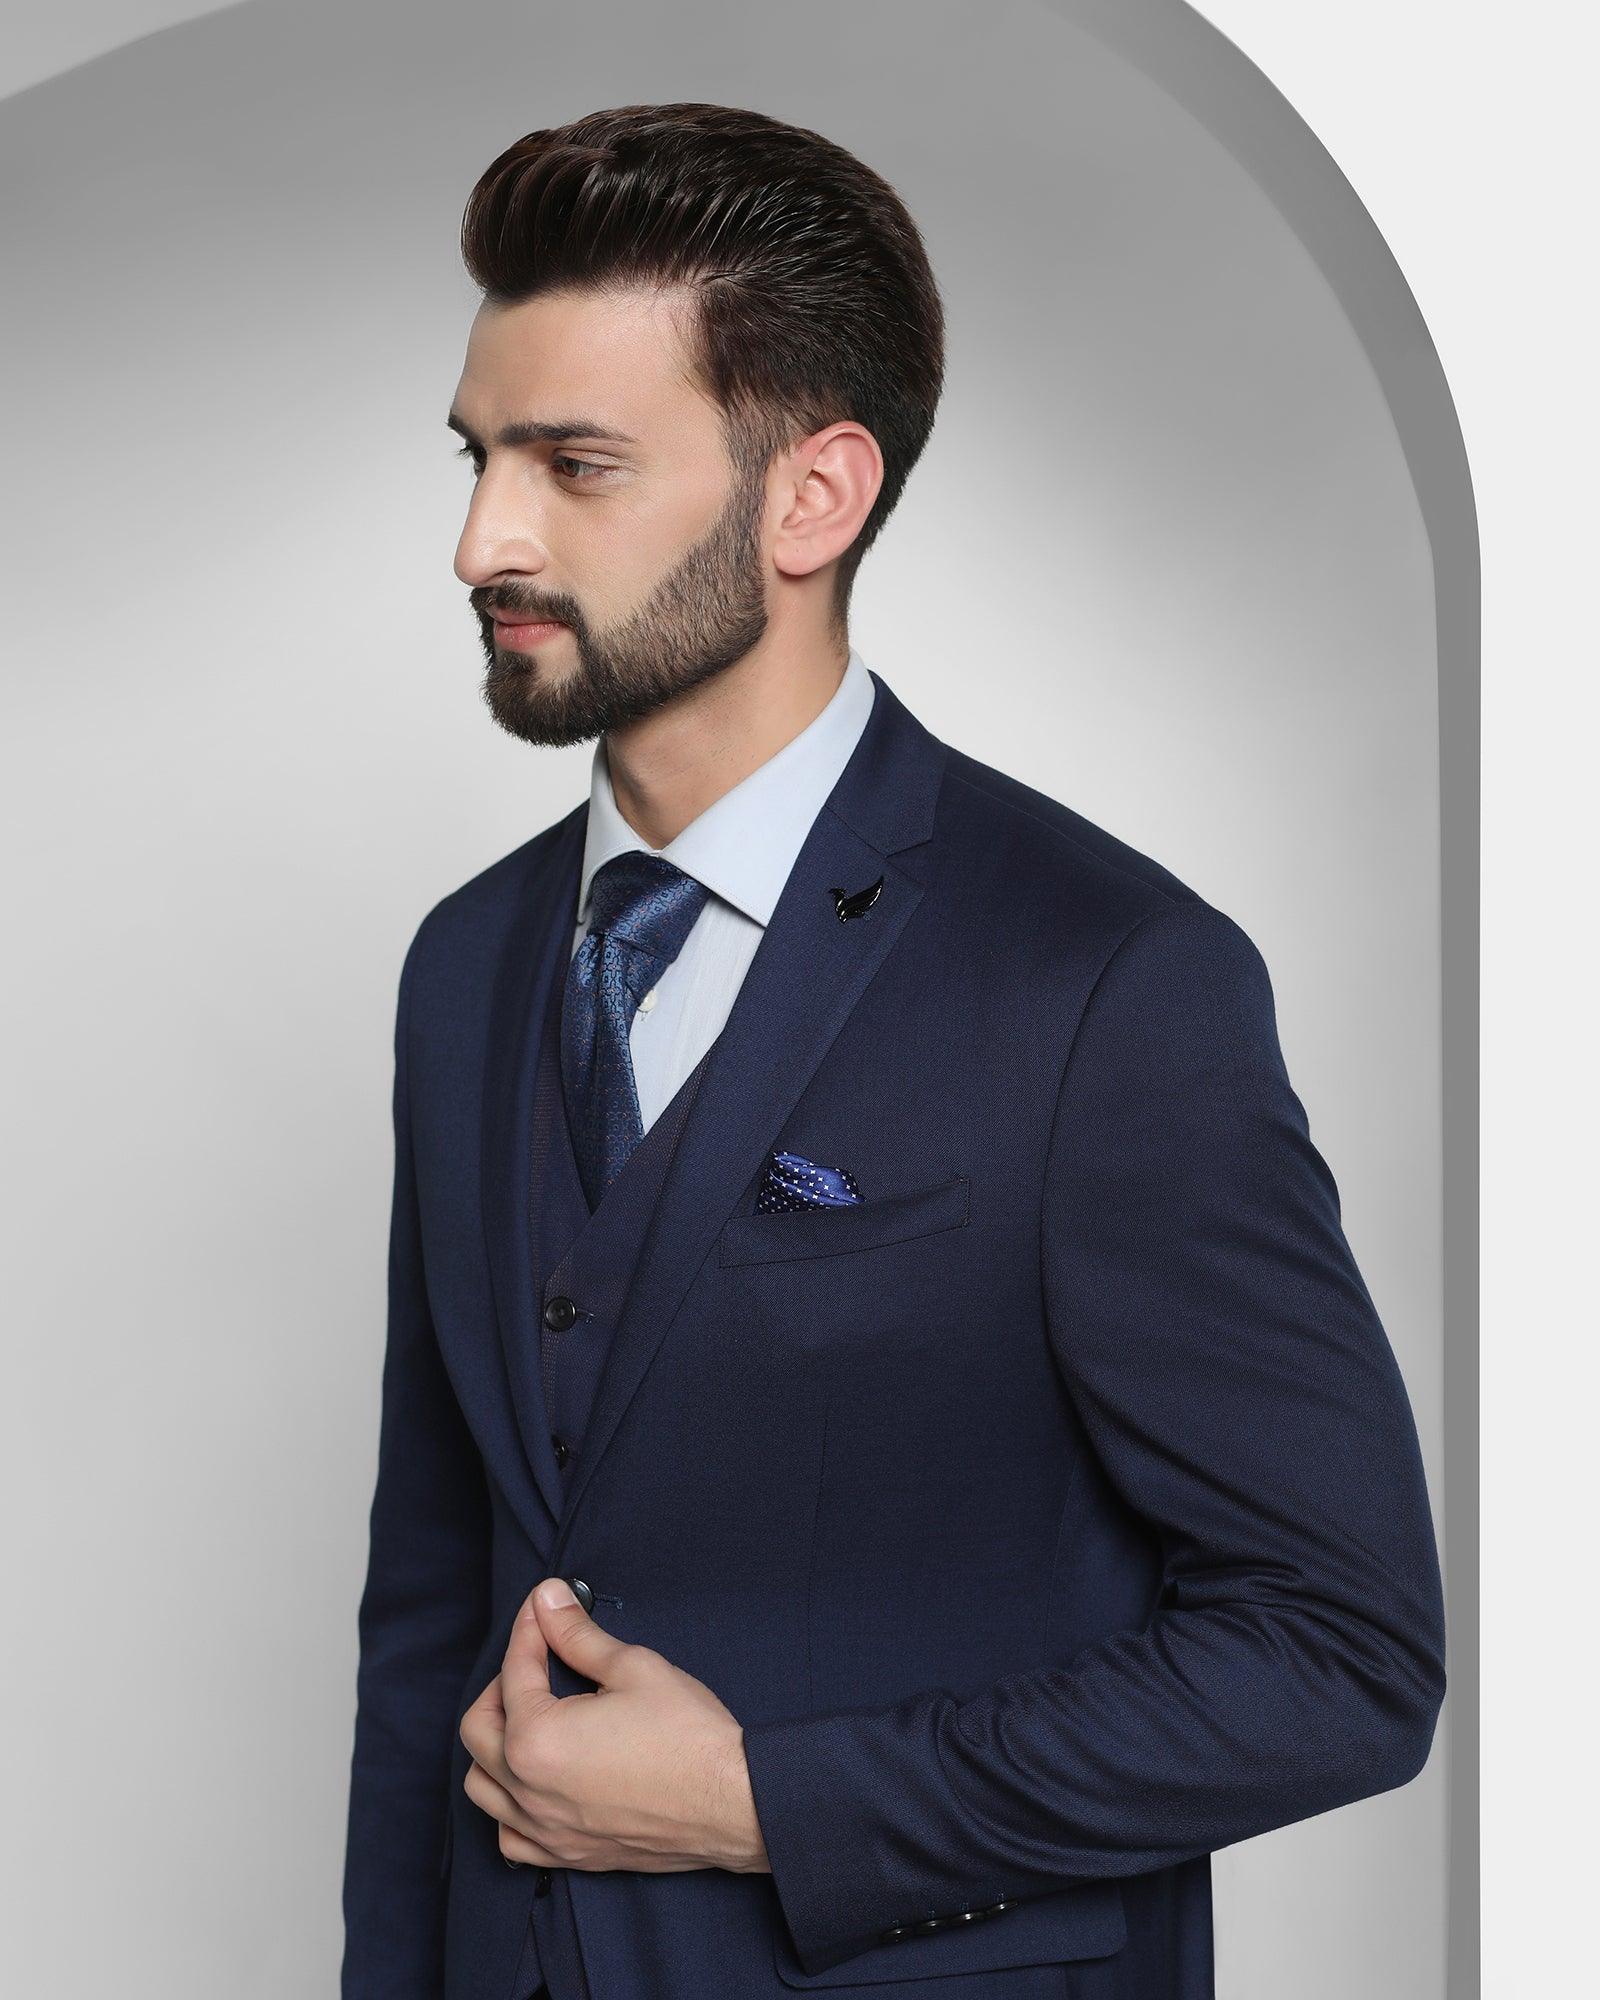 Three Piece Dark Blue Solid Formal Suit - Cabbot